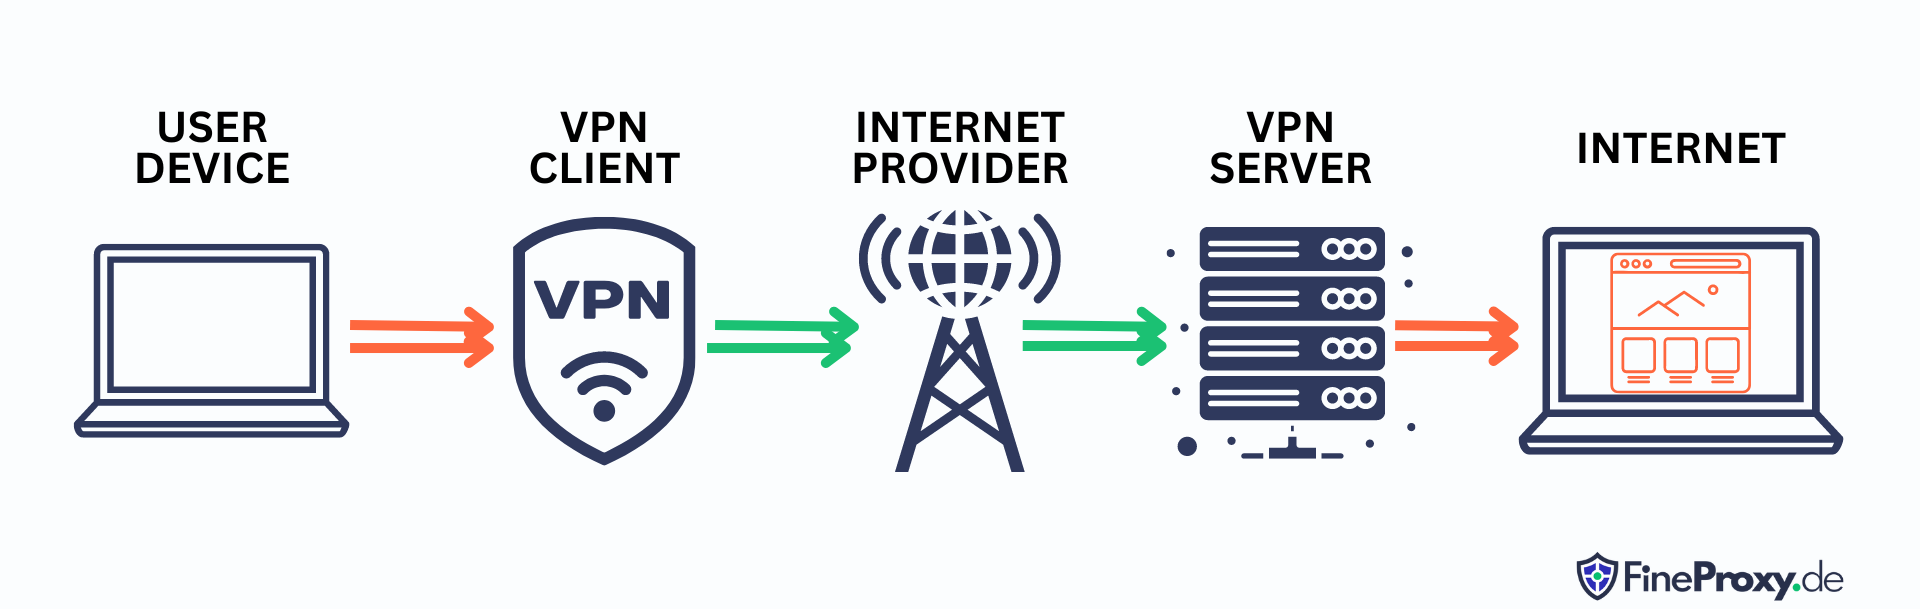 VPN サービスはどのように機能しますか?